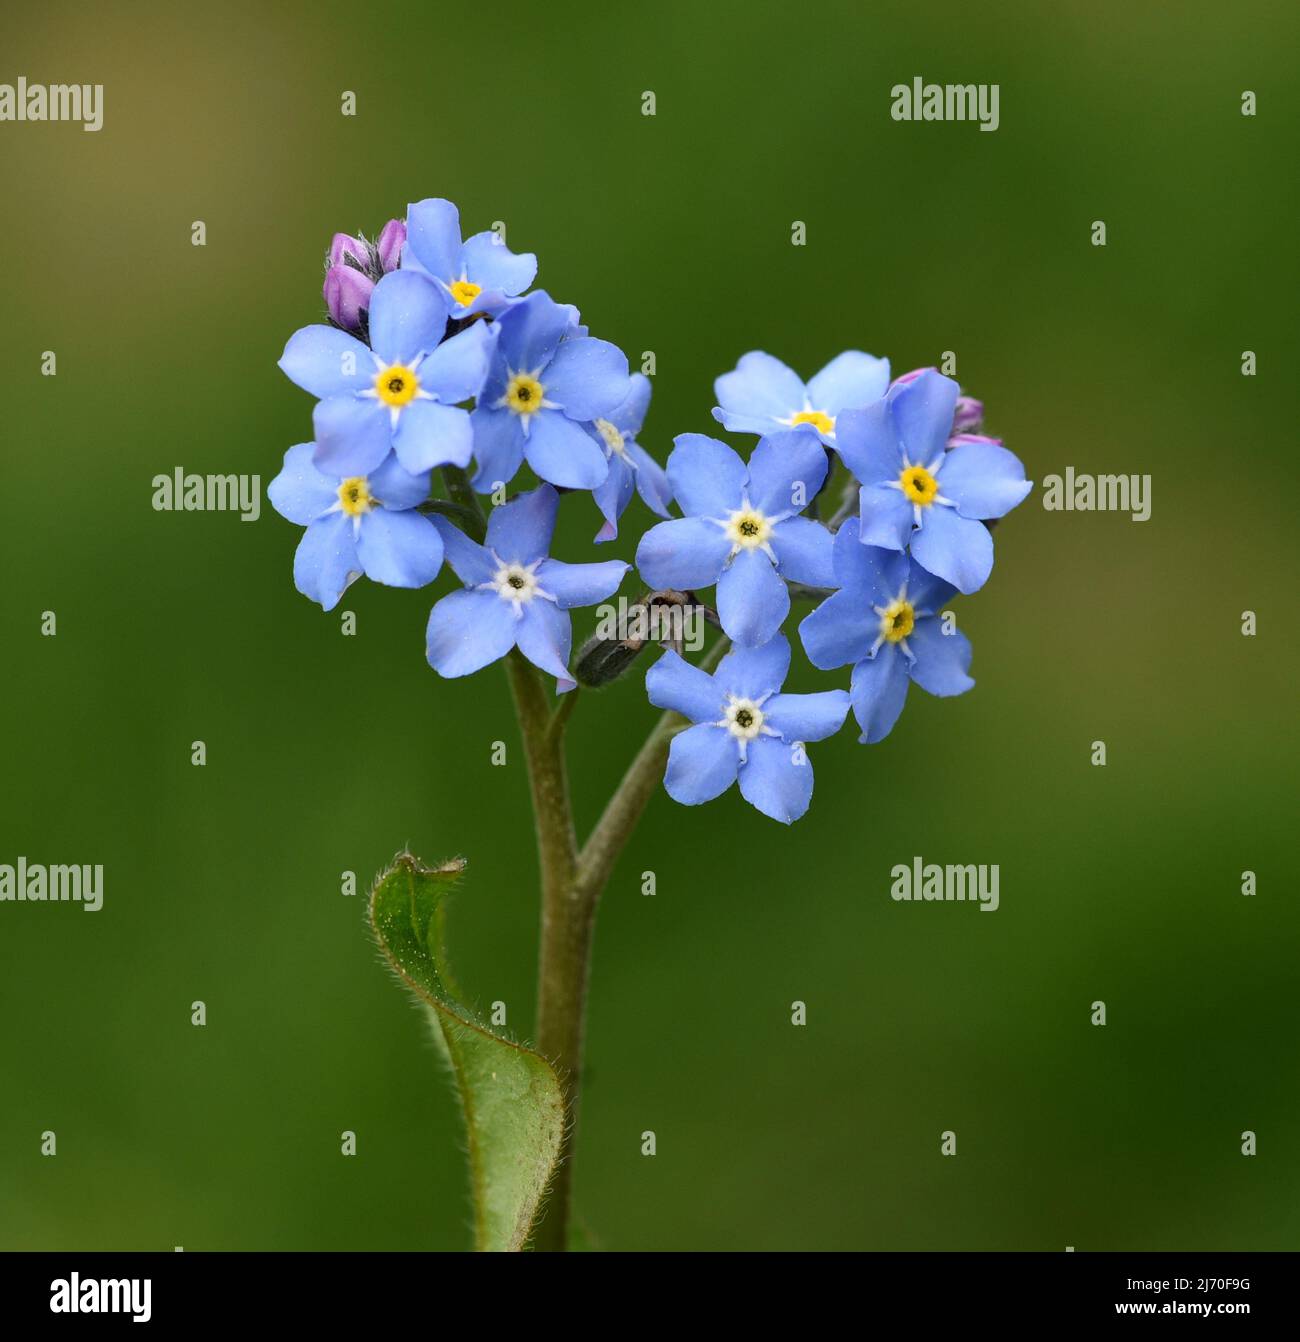 Vergiss mich nicht, Myosotis sylvatica, ist eine wunderschöne frühlingsblühende blaue Blume. Stockfoto